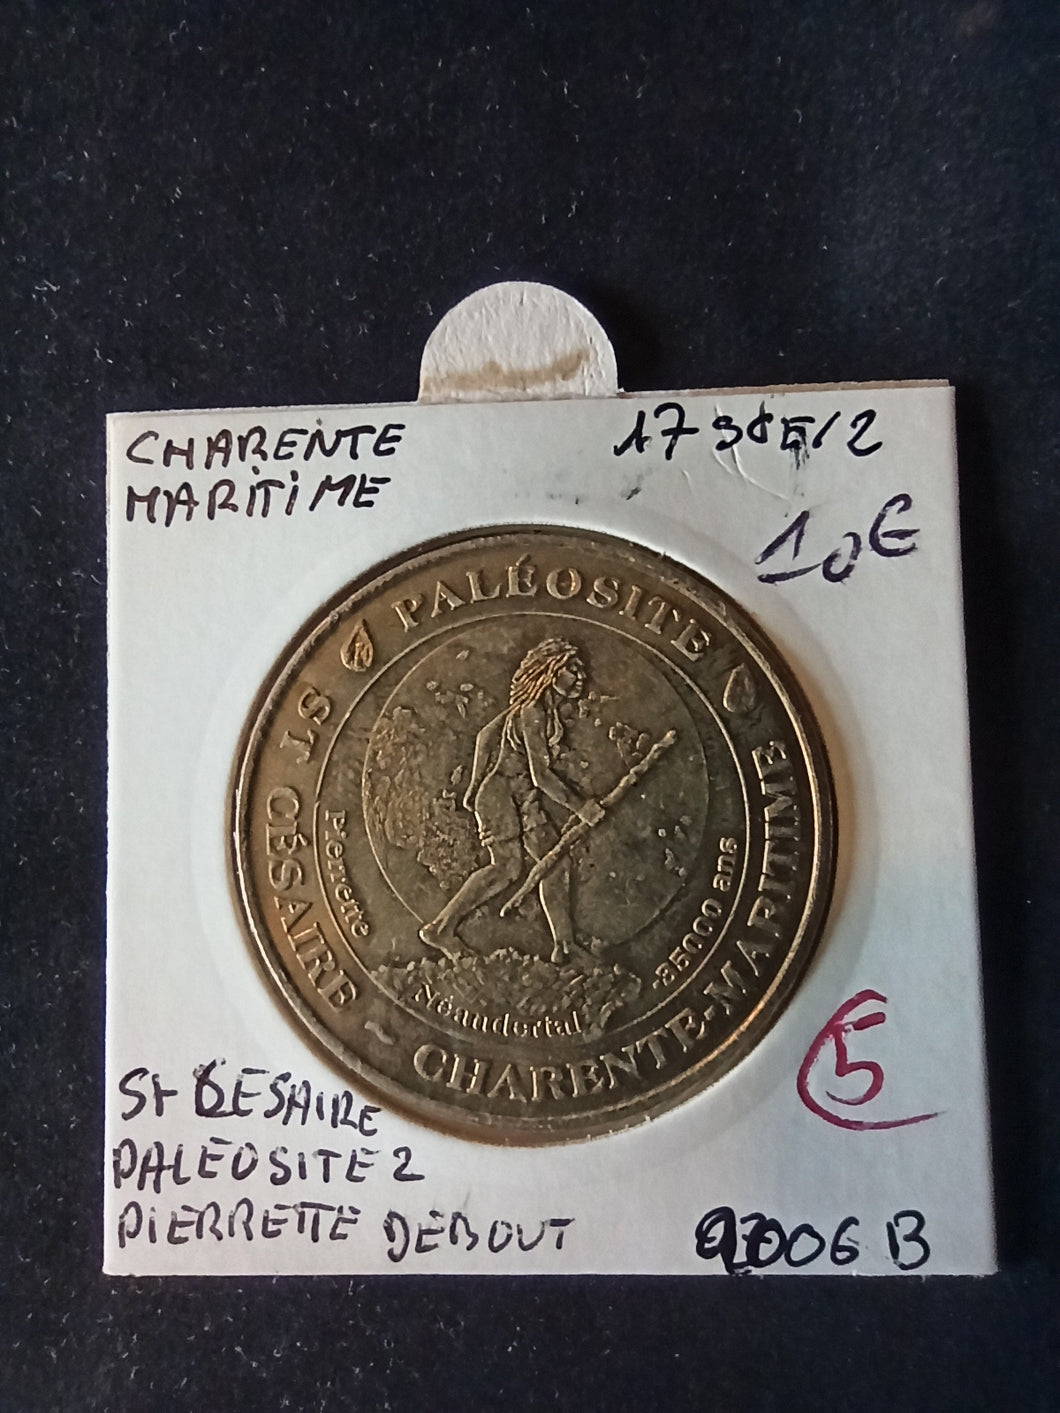 Jeton Monnaie de Paris : 17 La Rochelle Paléosite St Césaire 2006